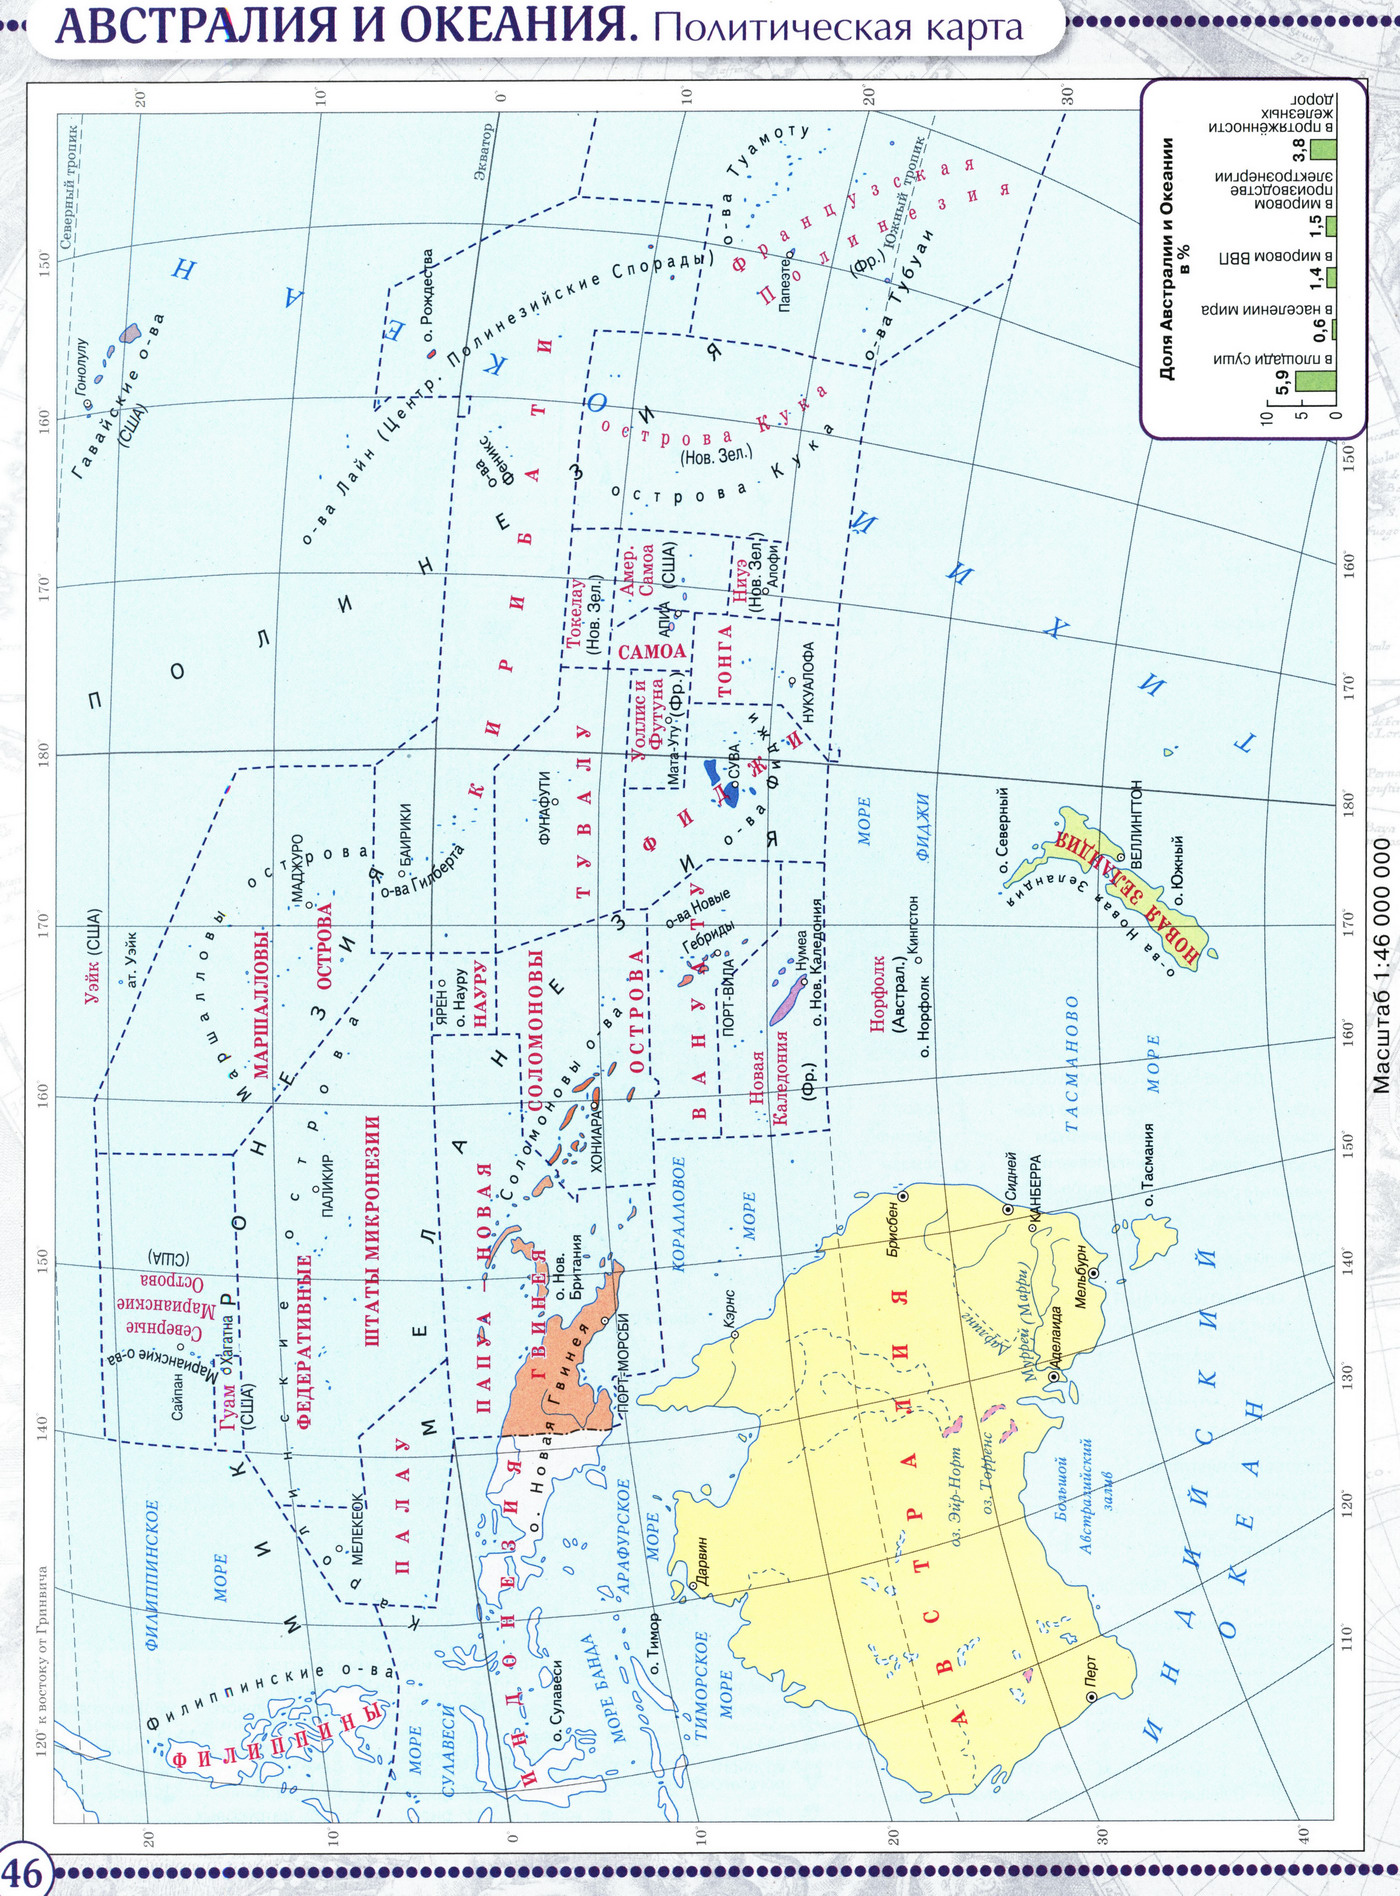 Мировой океан температура соленость рыболовство всемирное наследие контурная карта 6 класс стр 10 11